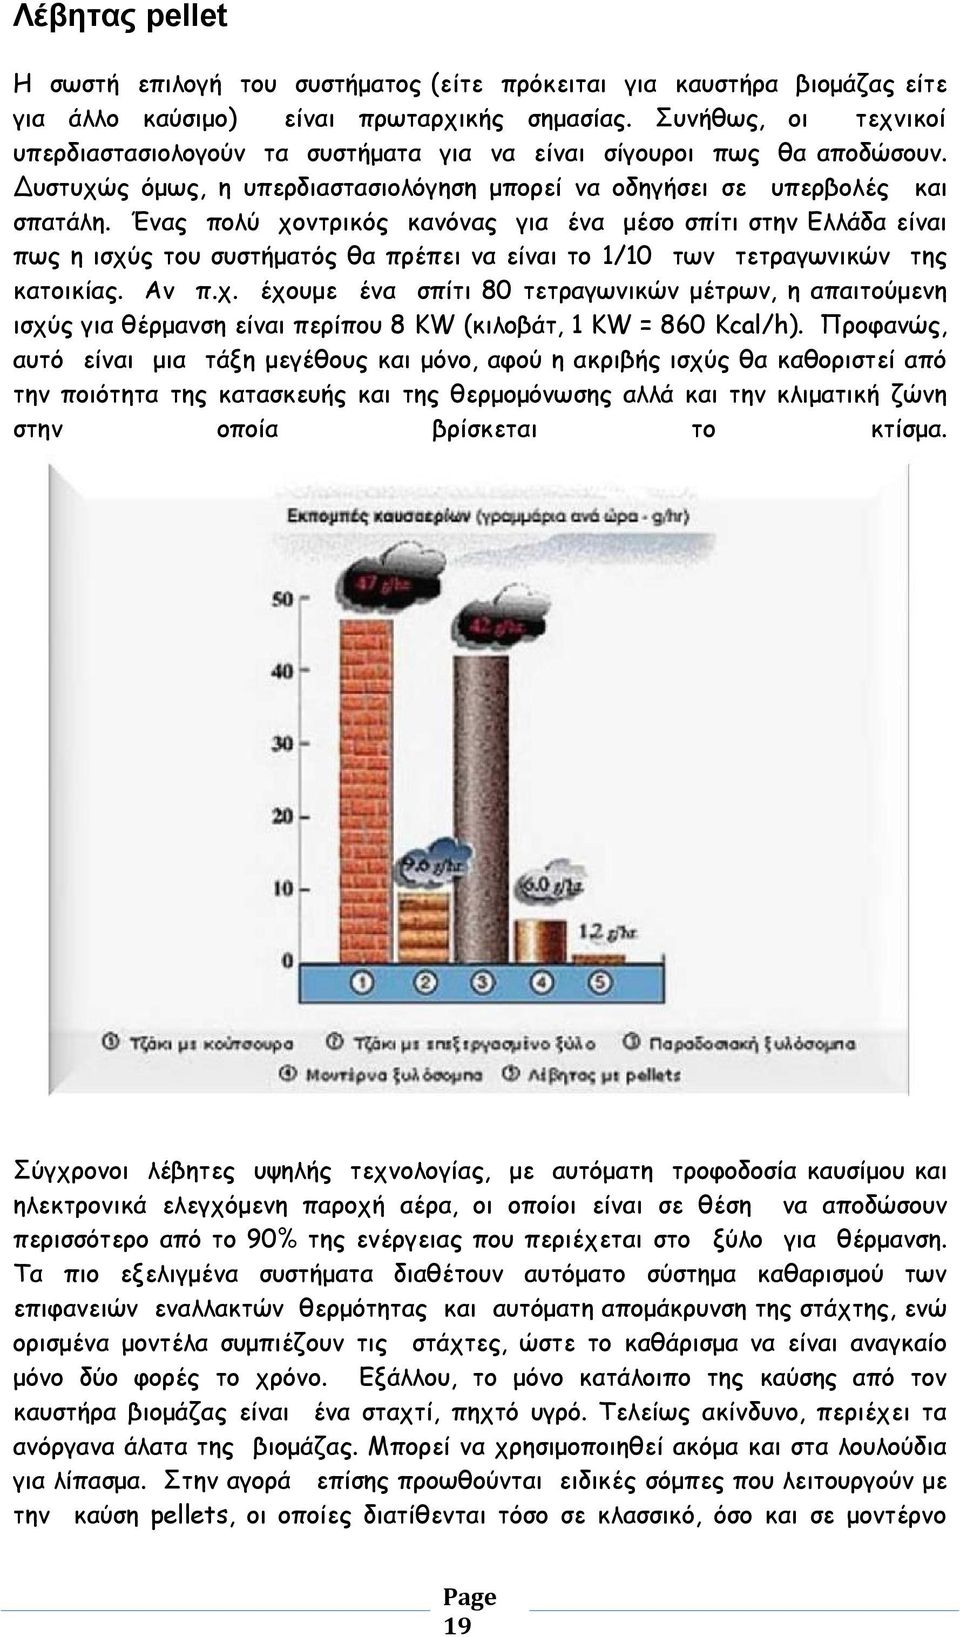 Ένας πολύ χοντρικός κανόνας για ένα μέσο σπίτι στην Ελλάδα είναι πως η ισχύς του συστήματός θα πρέπει να είναι το 1/10 των τετραγωνικών της κατοικίας. Αν π.χ. έχουμε ένα σπίτι 80 τετραγωνικών μέτρων, η απαιτούμενη ισχύς για θέρμανση είναι περίπου 8 KW (κιλοβάτ, 1 KW = 860 Kcal/h).